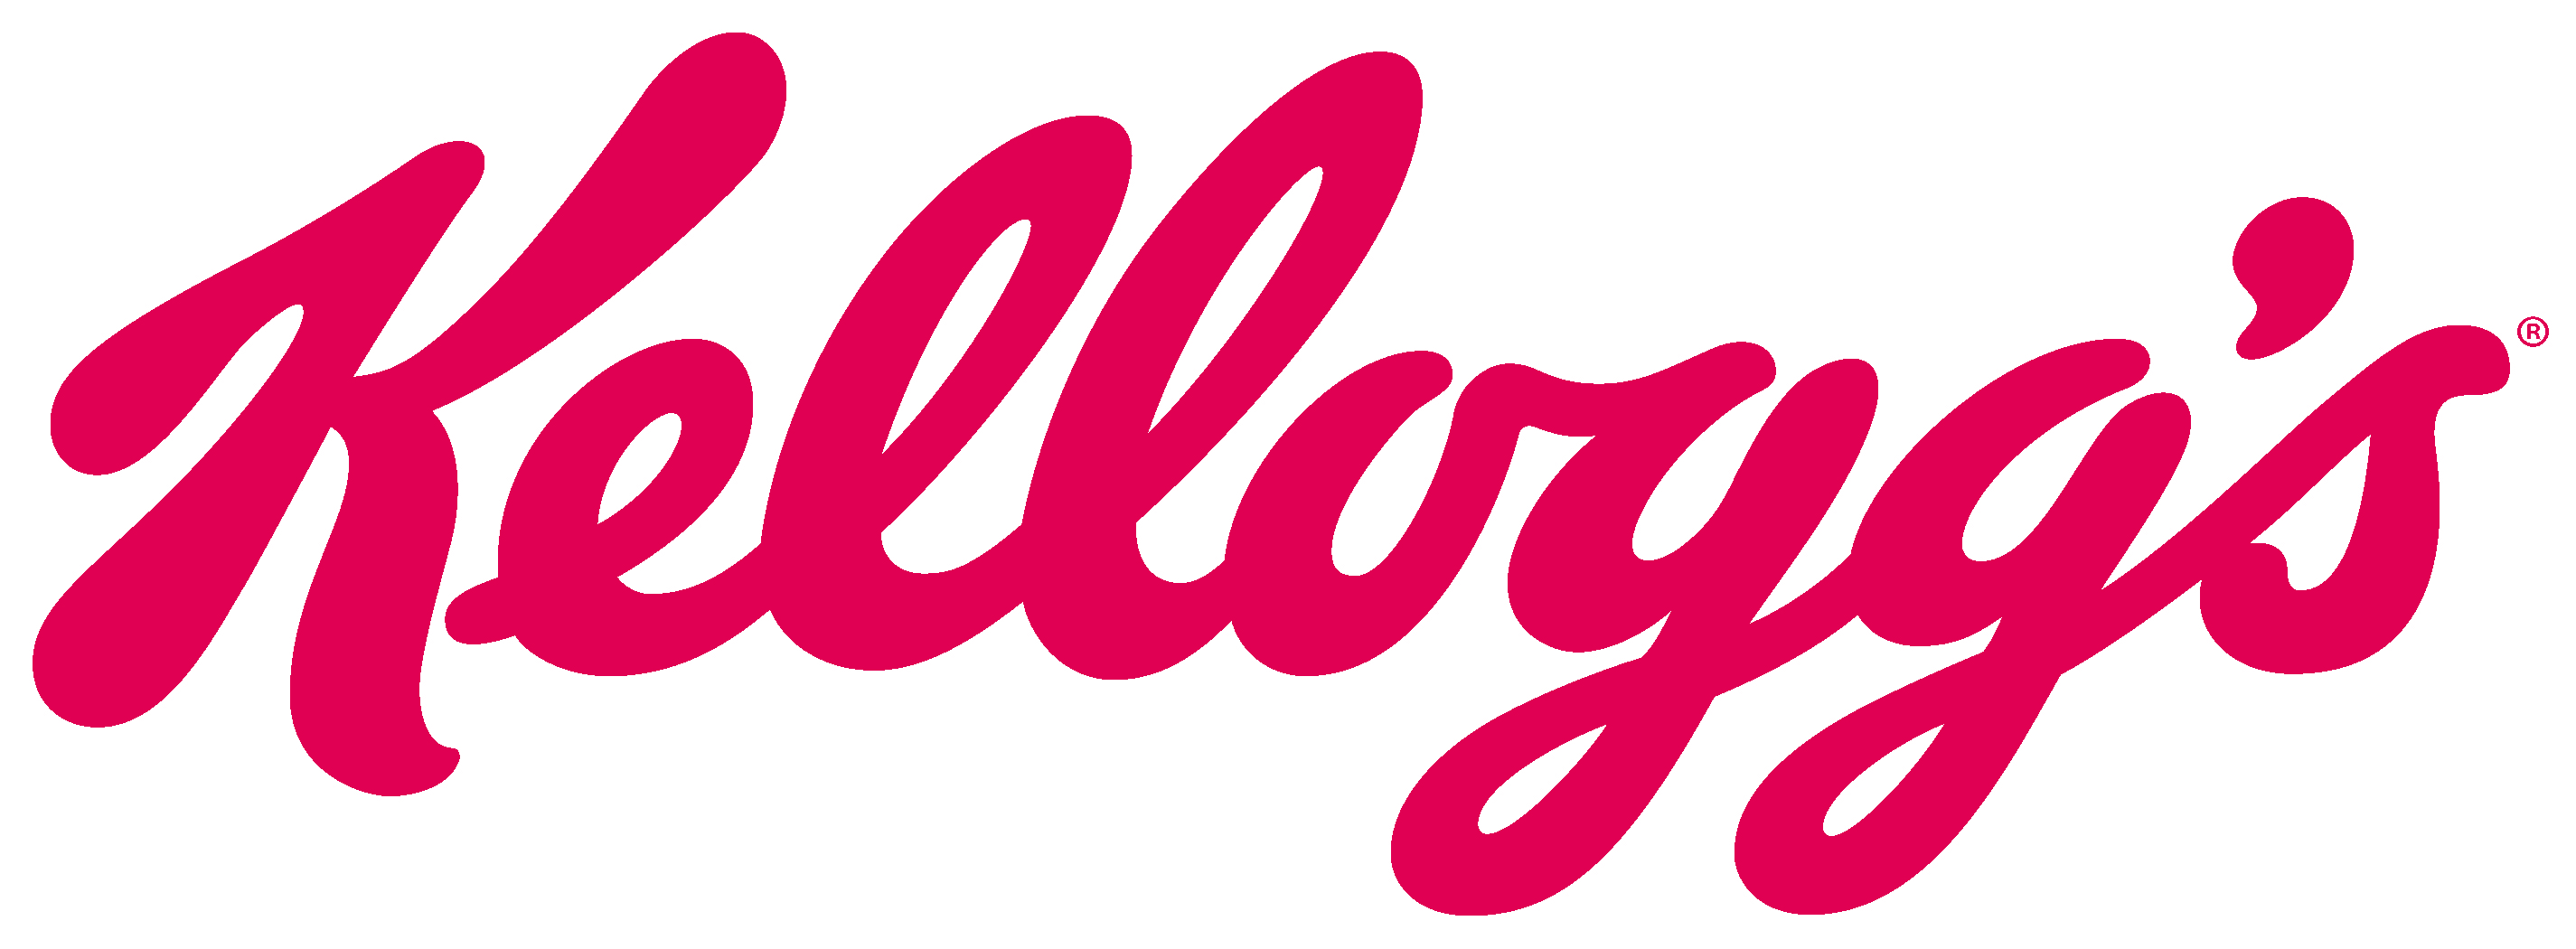 логотип Kellogs